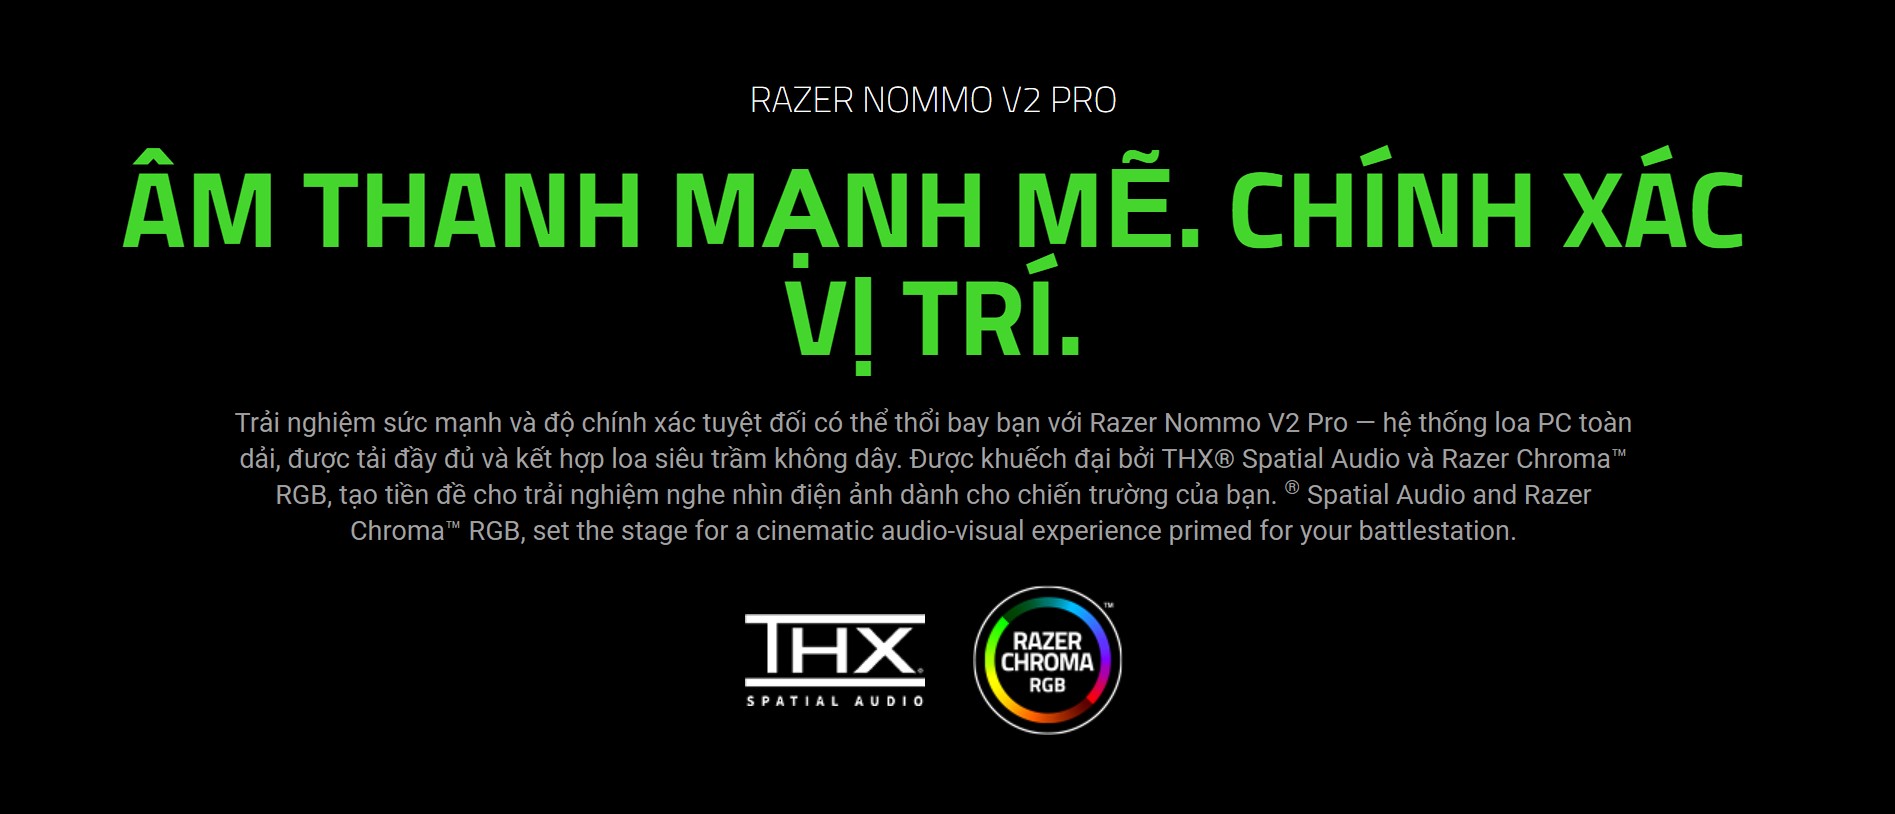 Loa Razer Nommo V2 Pro - 2.1 - Màu đen